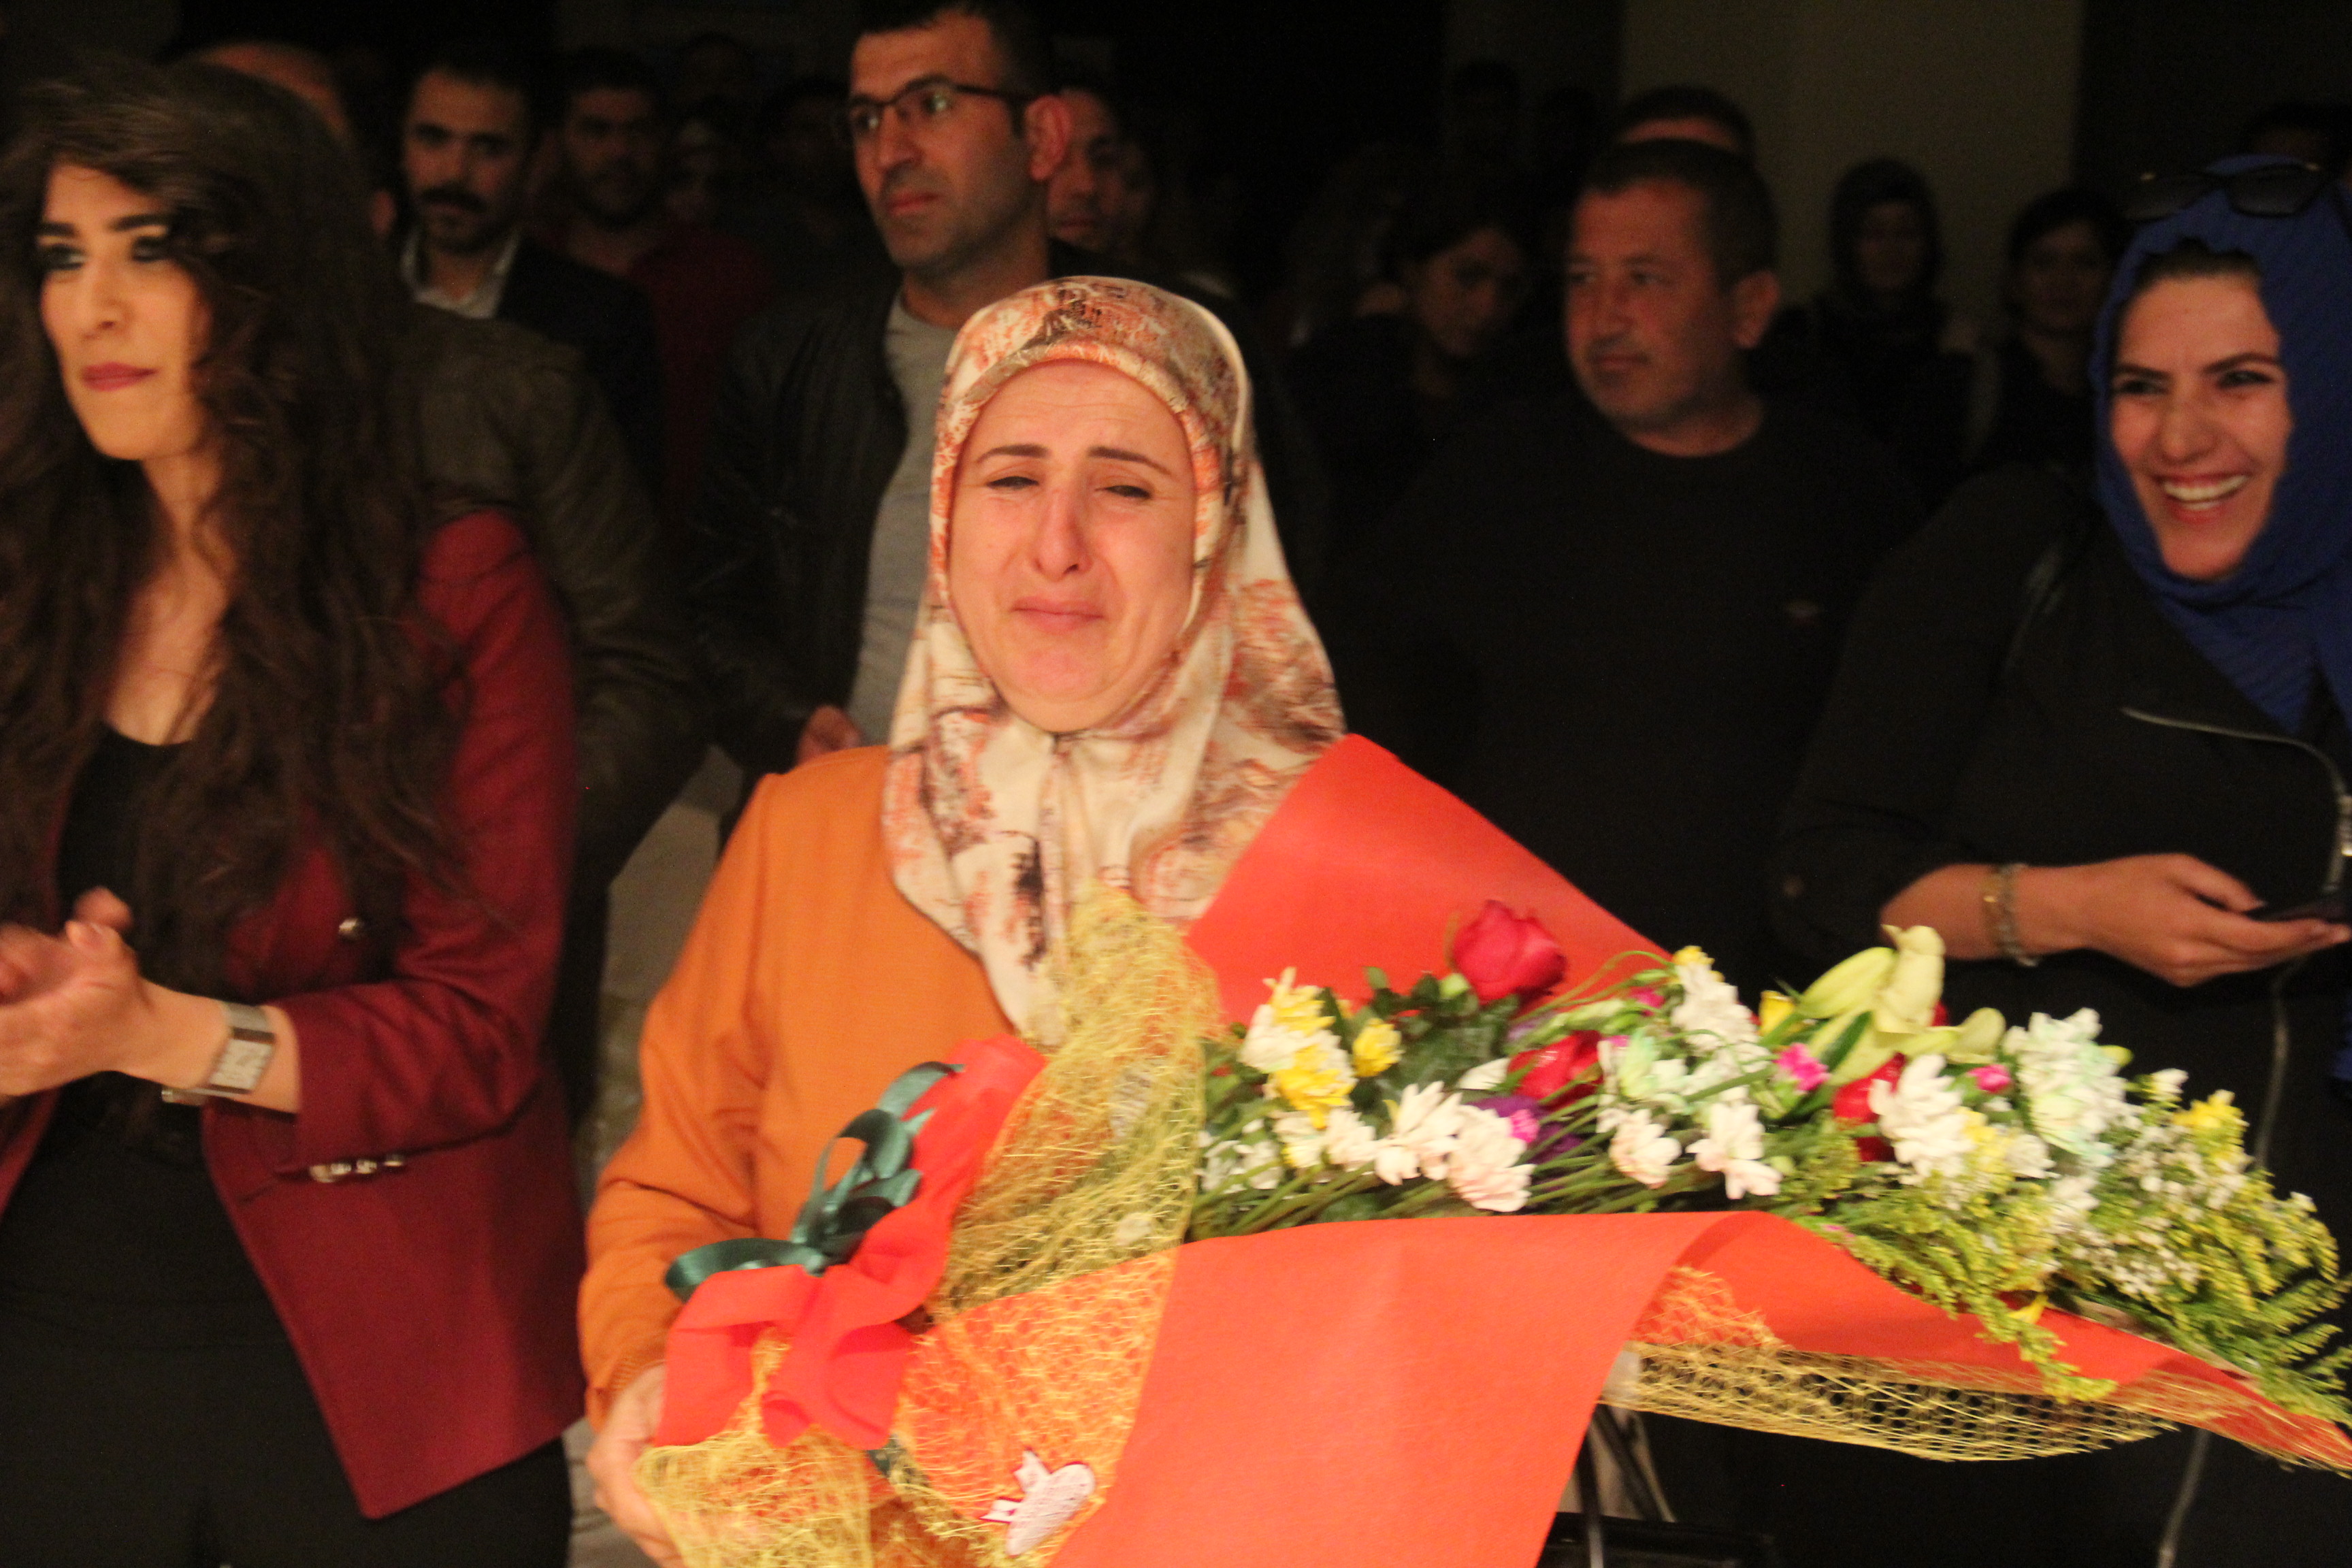 Bitlis Belediyesi’nin davetlisi olarak kentte gelen Gazeteci Hayko Bağdat, sahnelediği ”Salyongoz” adlı gösteriye, yurttaşlar yoğun ilgi gösterdi.